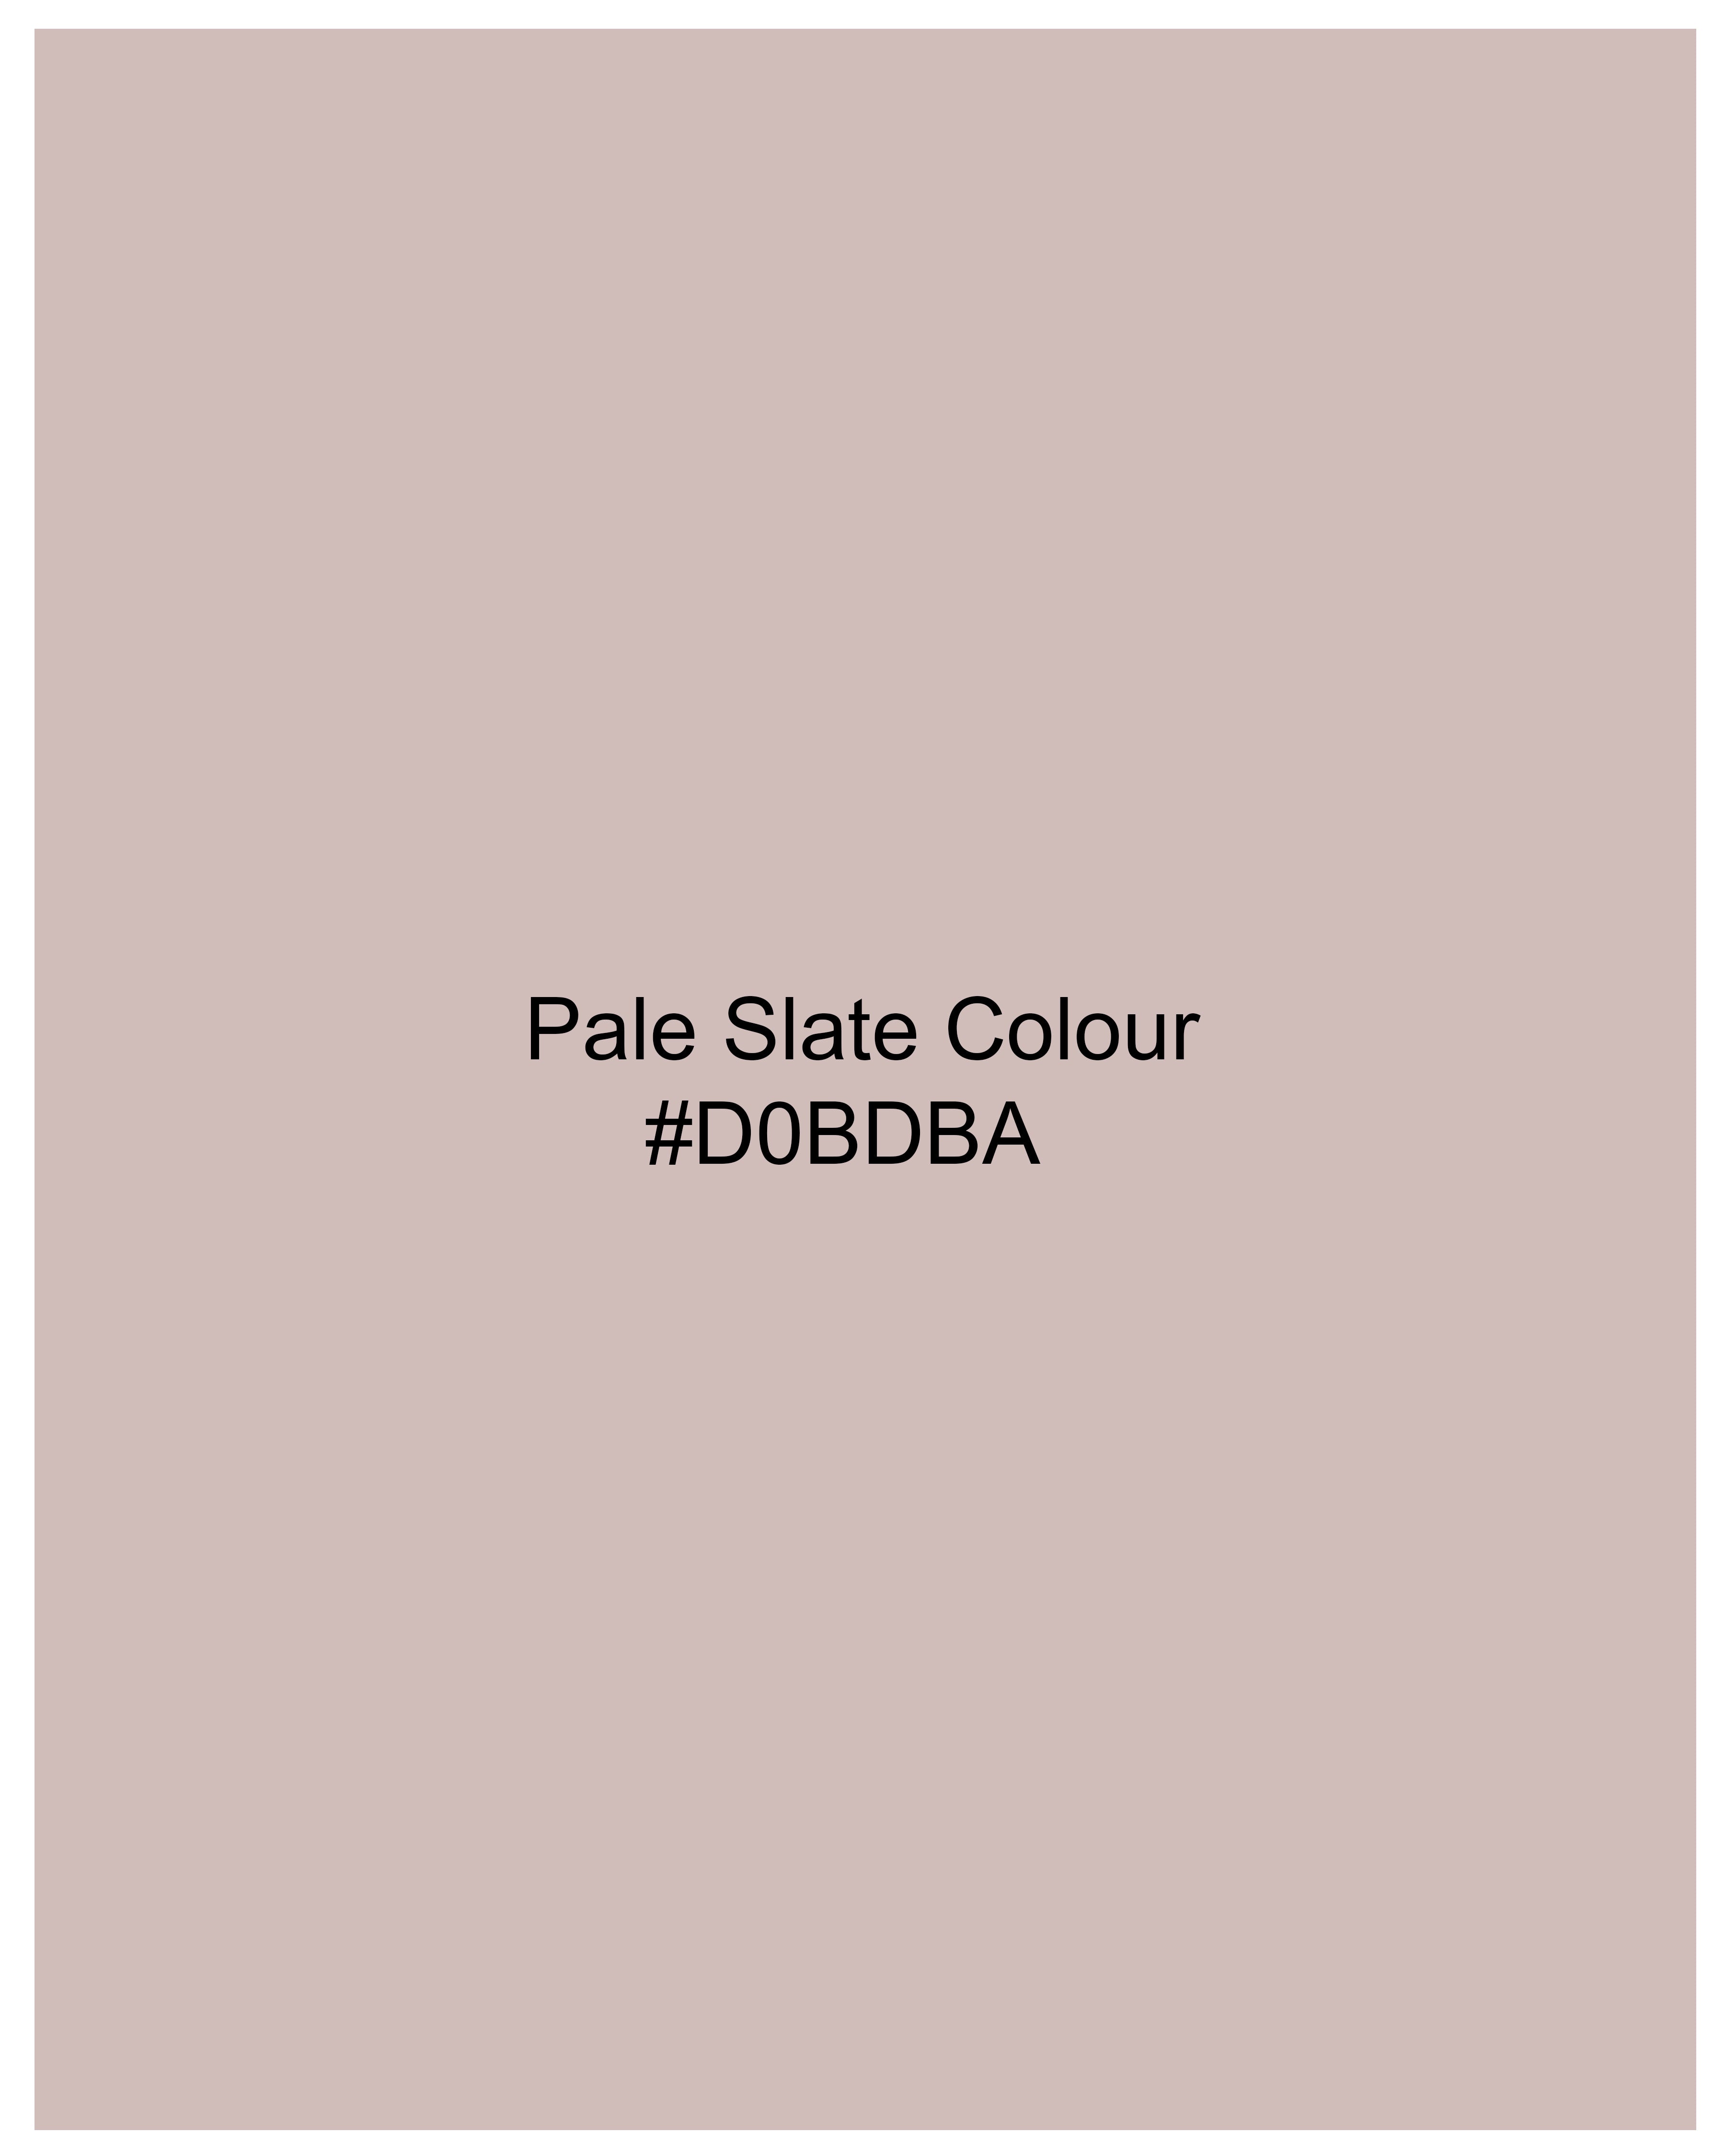 Pale Slate Peach Subtle Checkered Pant T2370-28, T2370-30, T2370-32, T2370-34, T2370-36, T2370-38, T2370-40, T2370-42, T2370-44